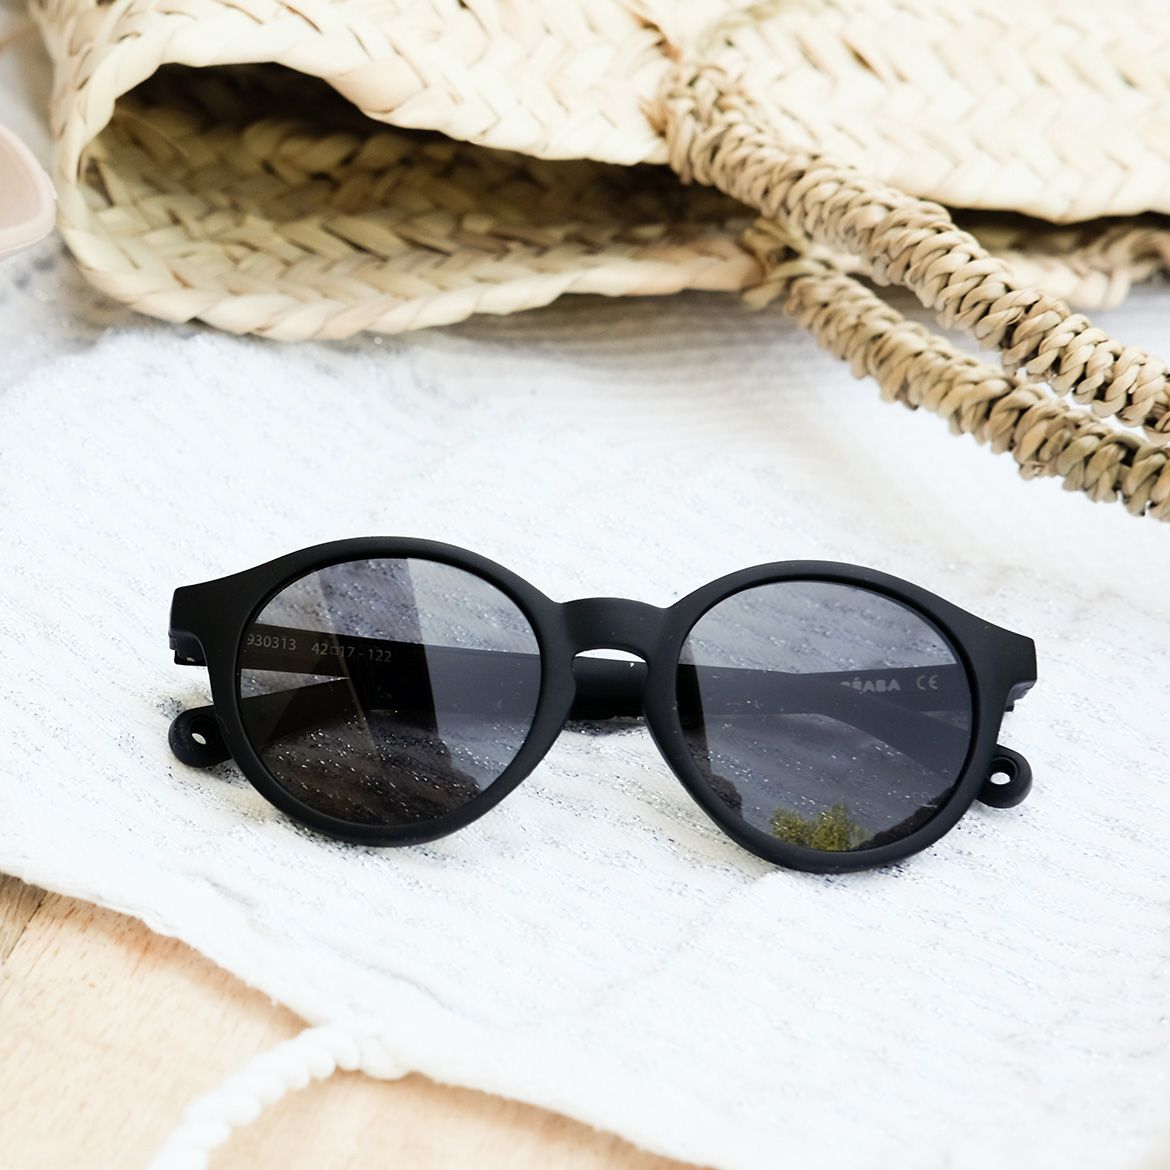 Детские солнцезащитные очки Beaba, 4-6 лет, черный (930313) - фото 7